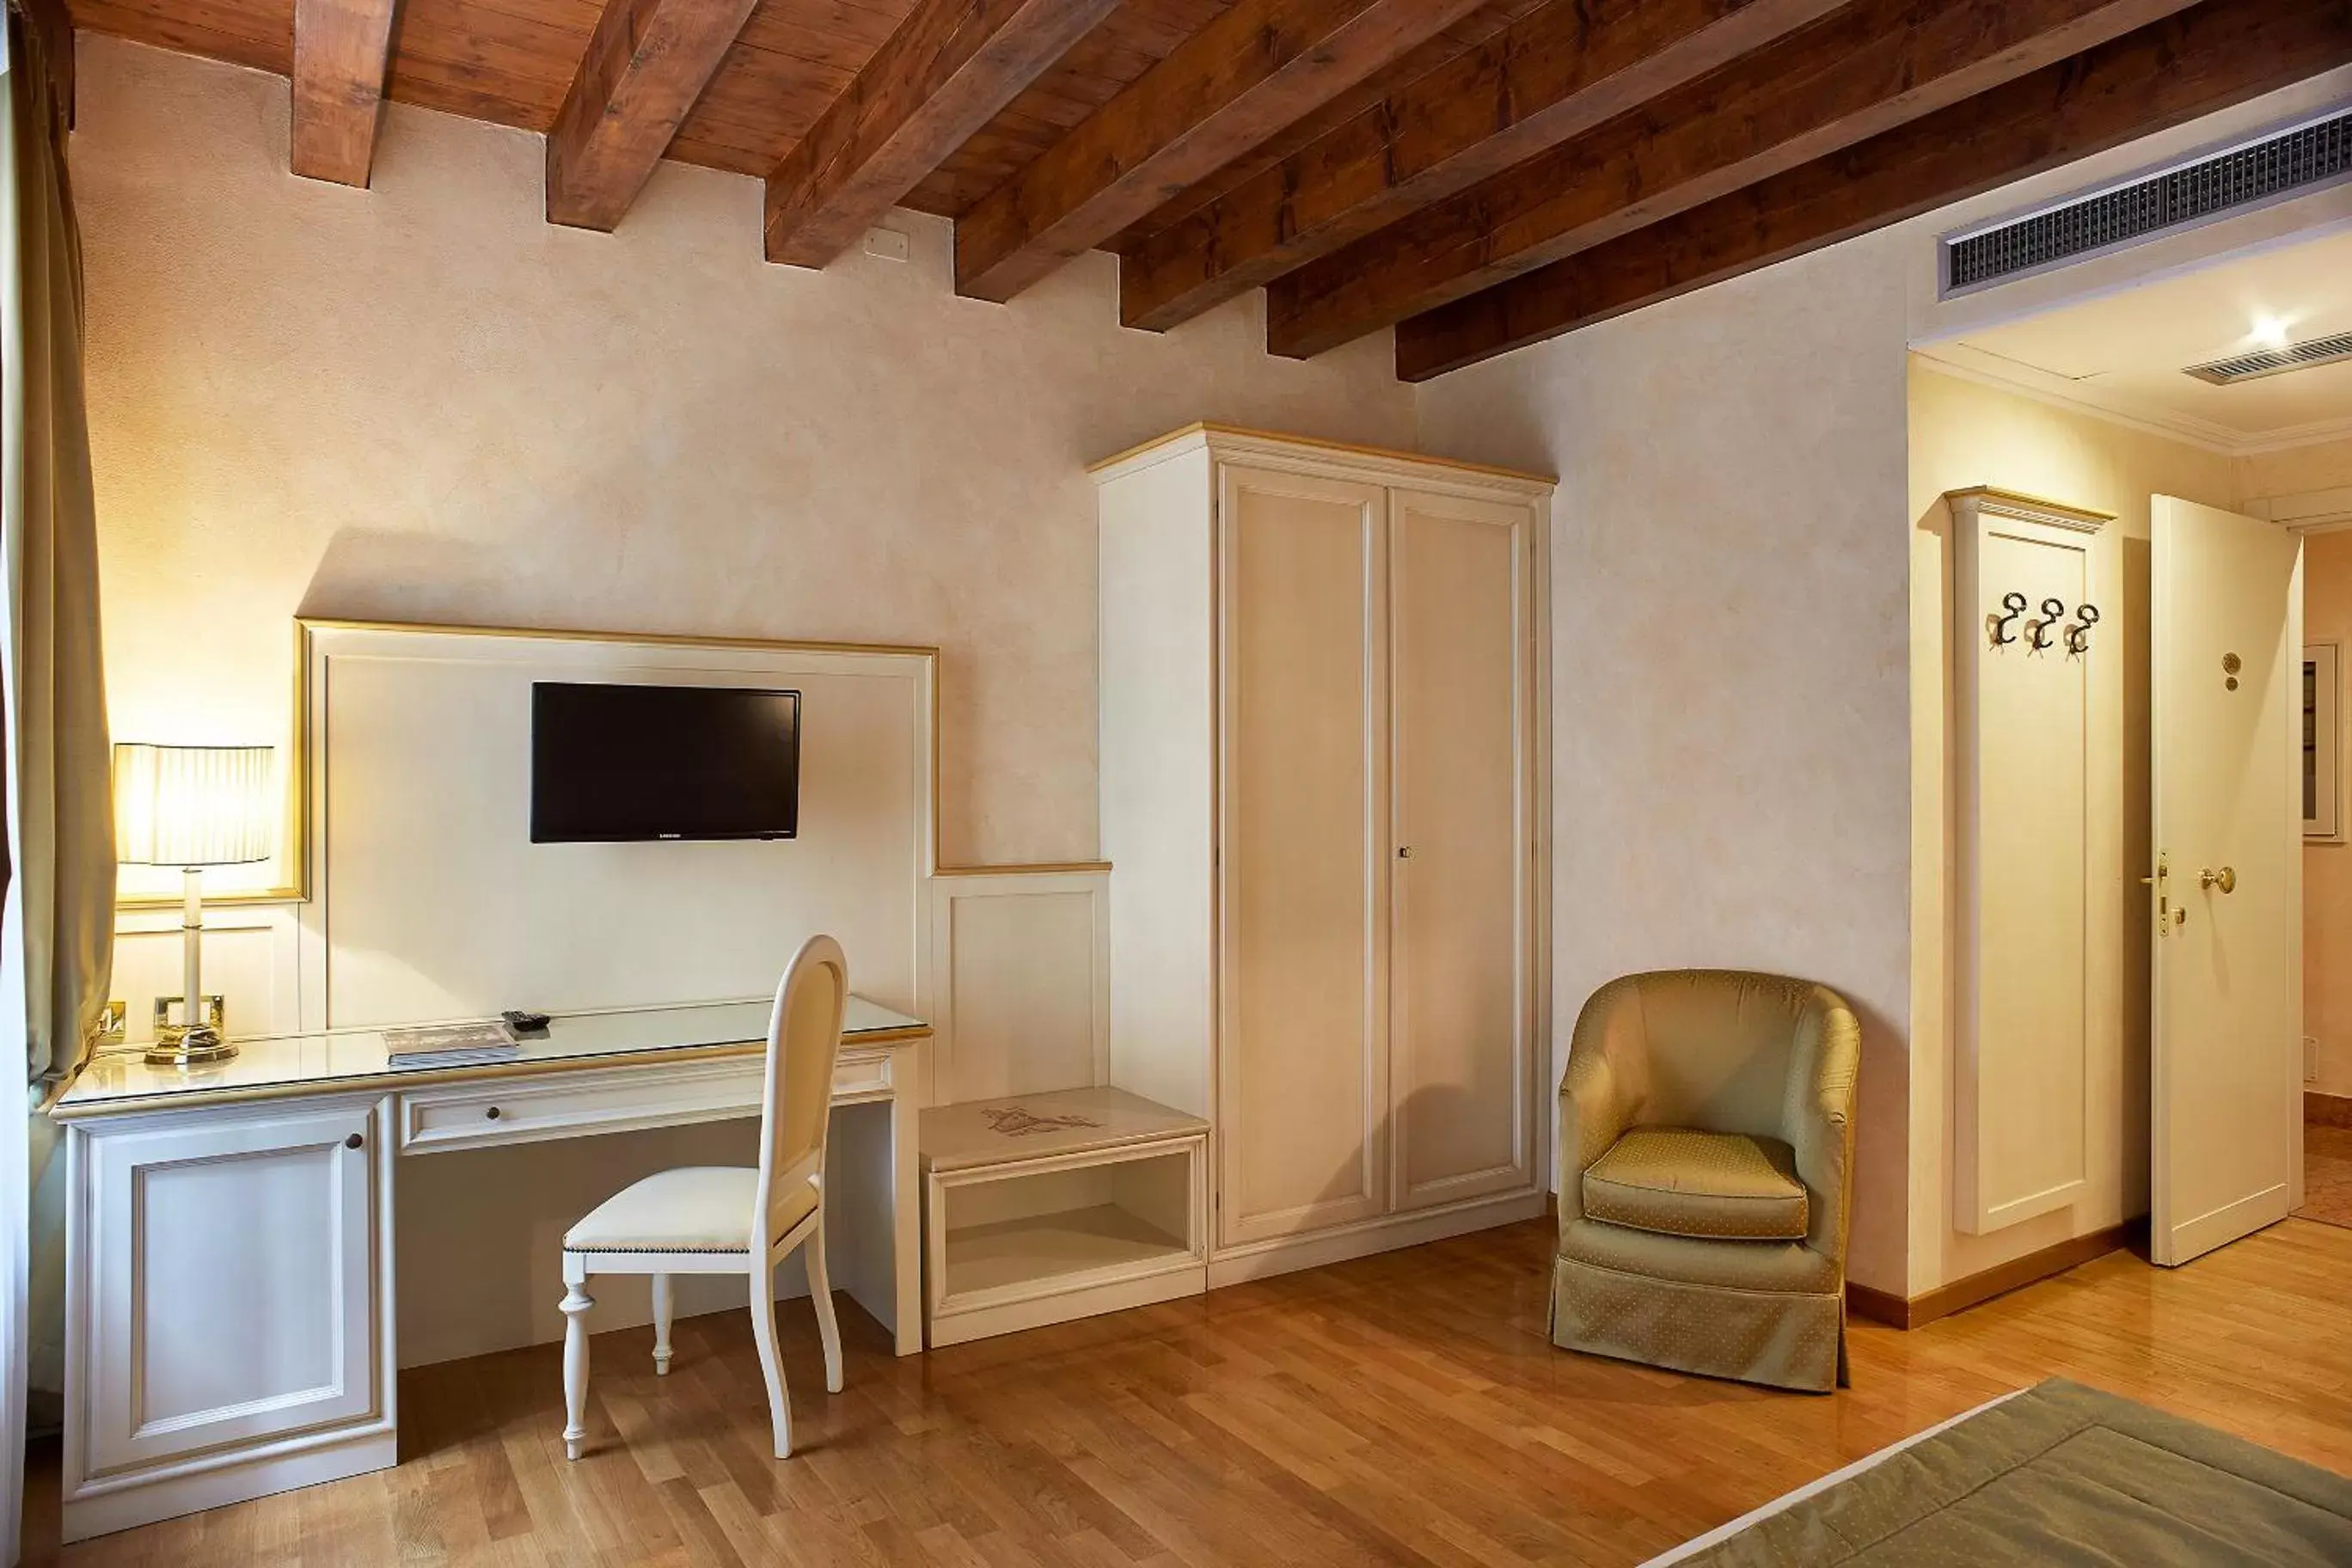 Bedroom, TV/Entertainment Center in Albergo Mazzanti